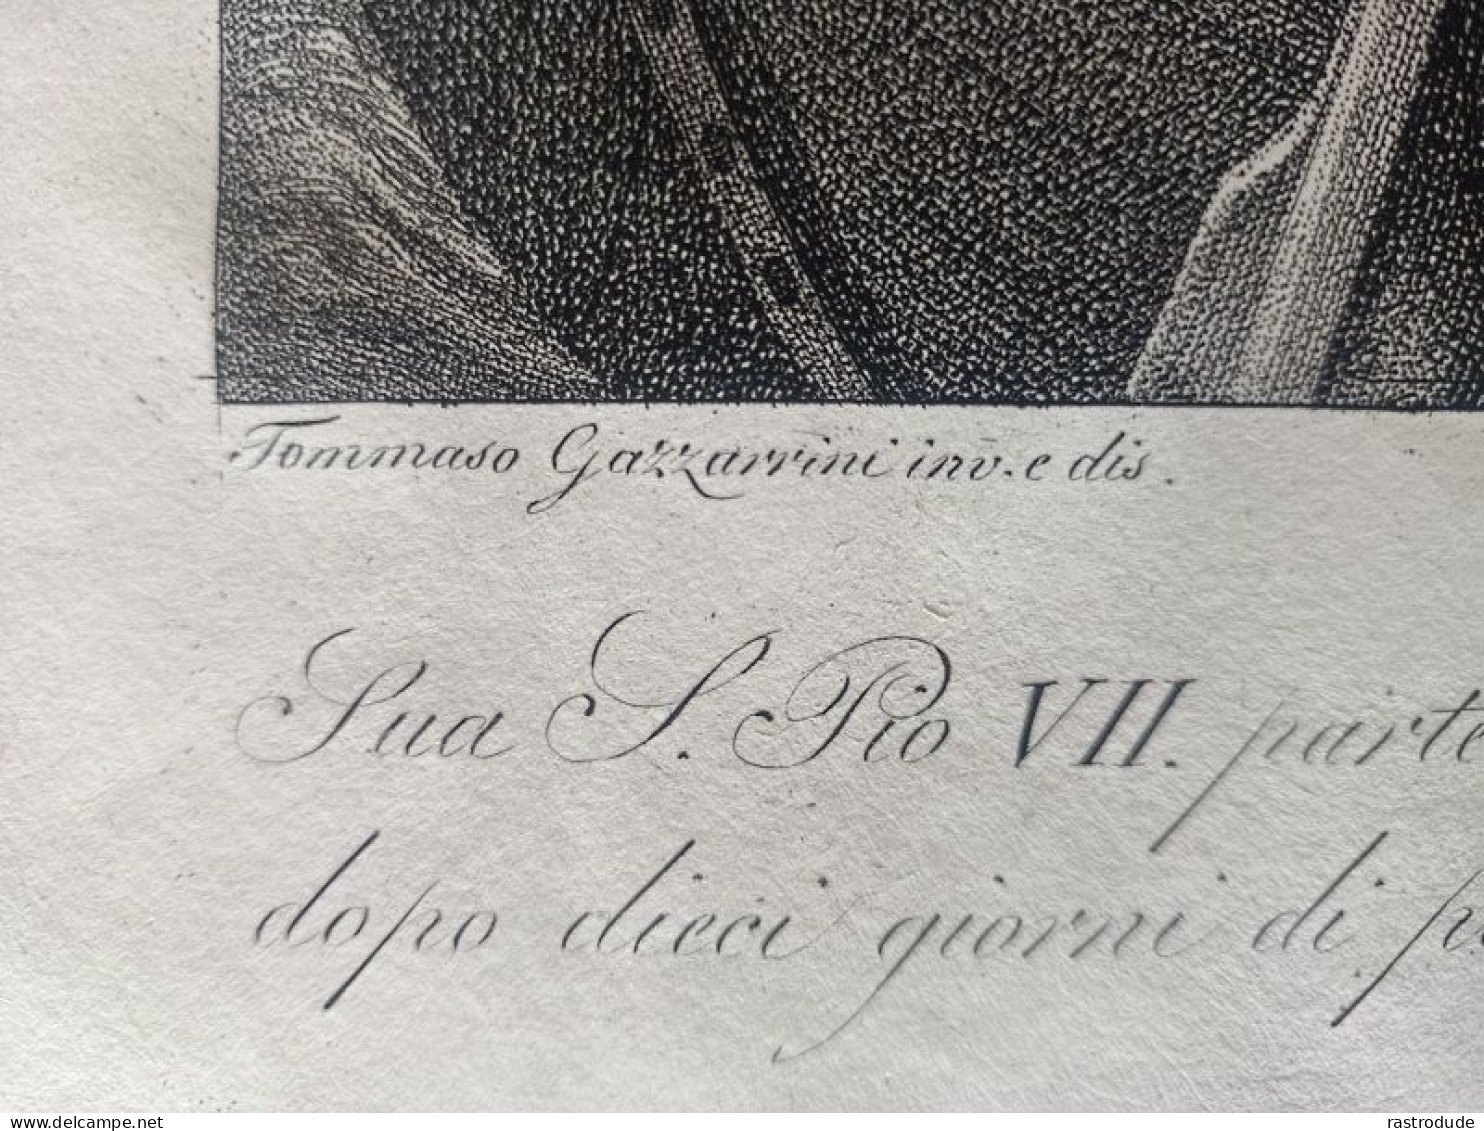 1800 - 1815 INCISIONE  ANTONIO VERICO - PAPA PIO VII ARRIVA AD ANCONA 22 GIUGNO 1800 DOPO TOMMASSO GAZZARINI